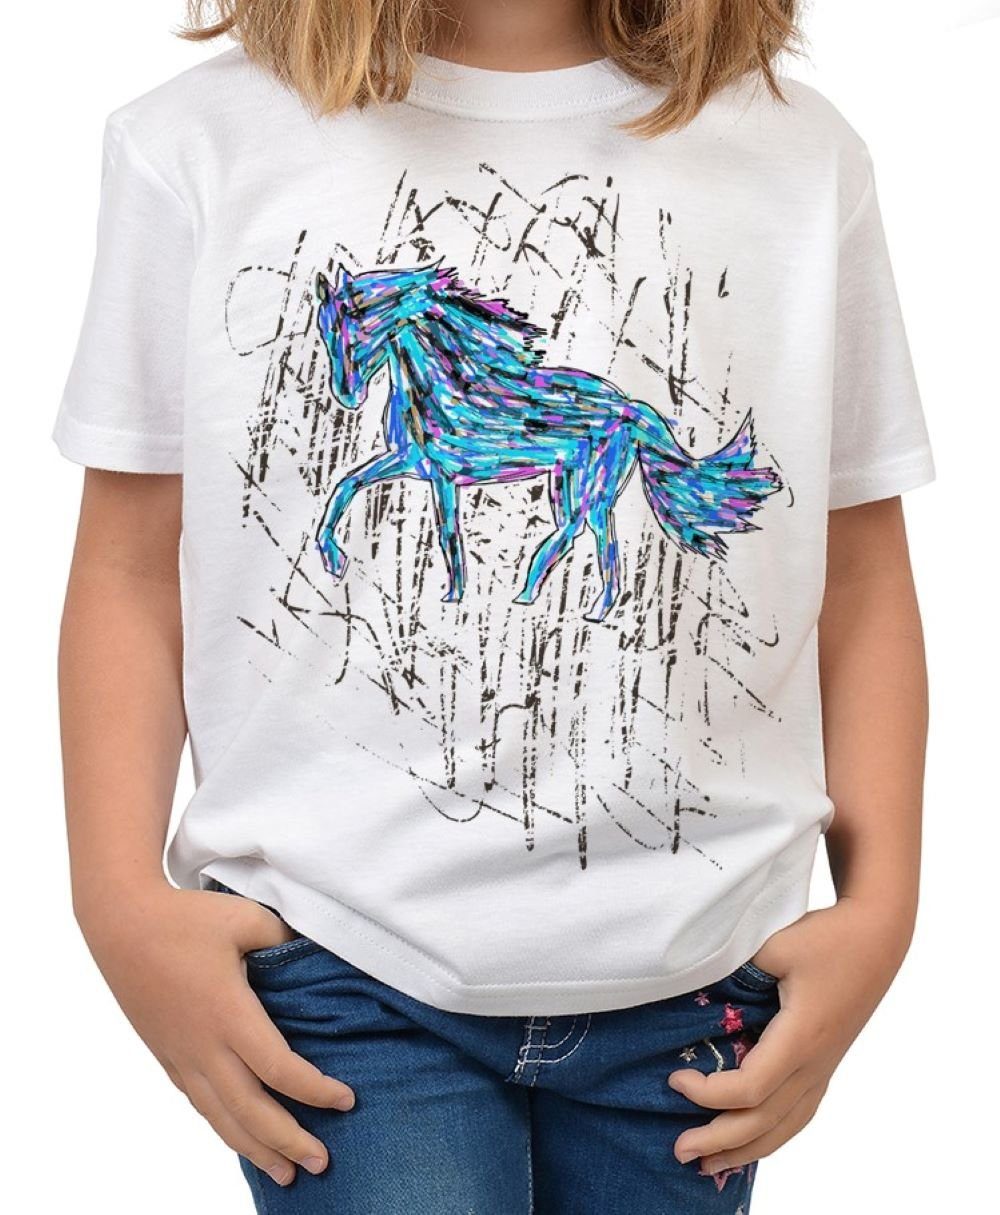 T-Shirt bunt, bunt Zeichnung Shirts Pferde - Kindershirt Pferde Kindershirt Pferd blau Motiv : Tini